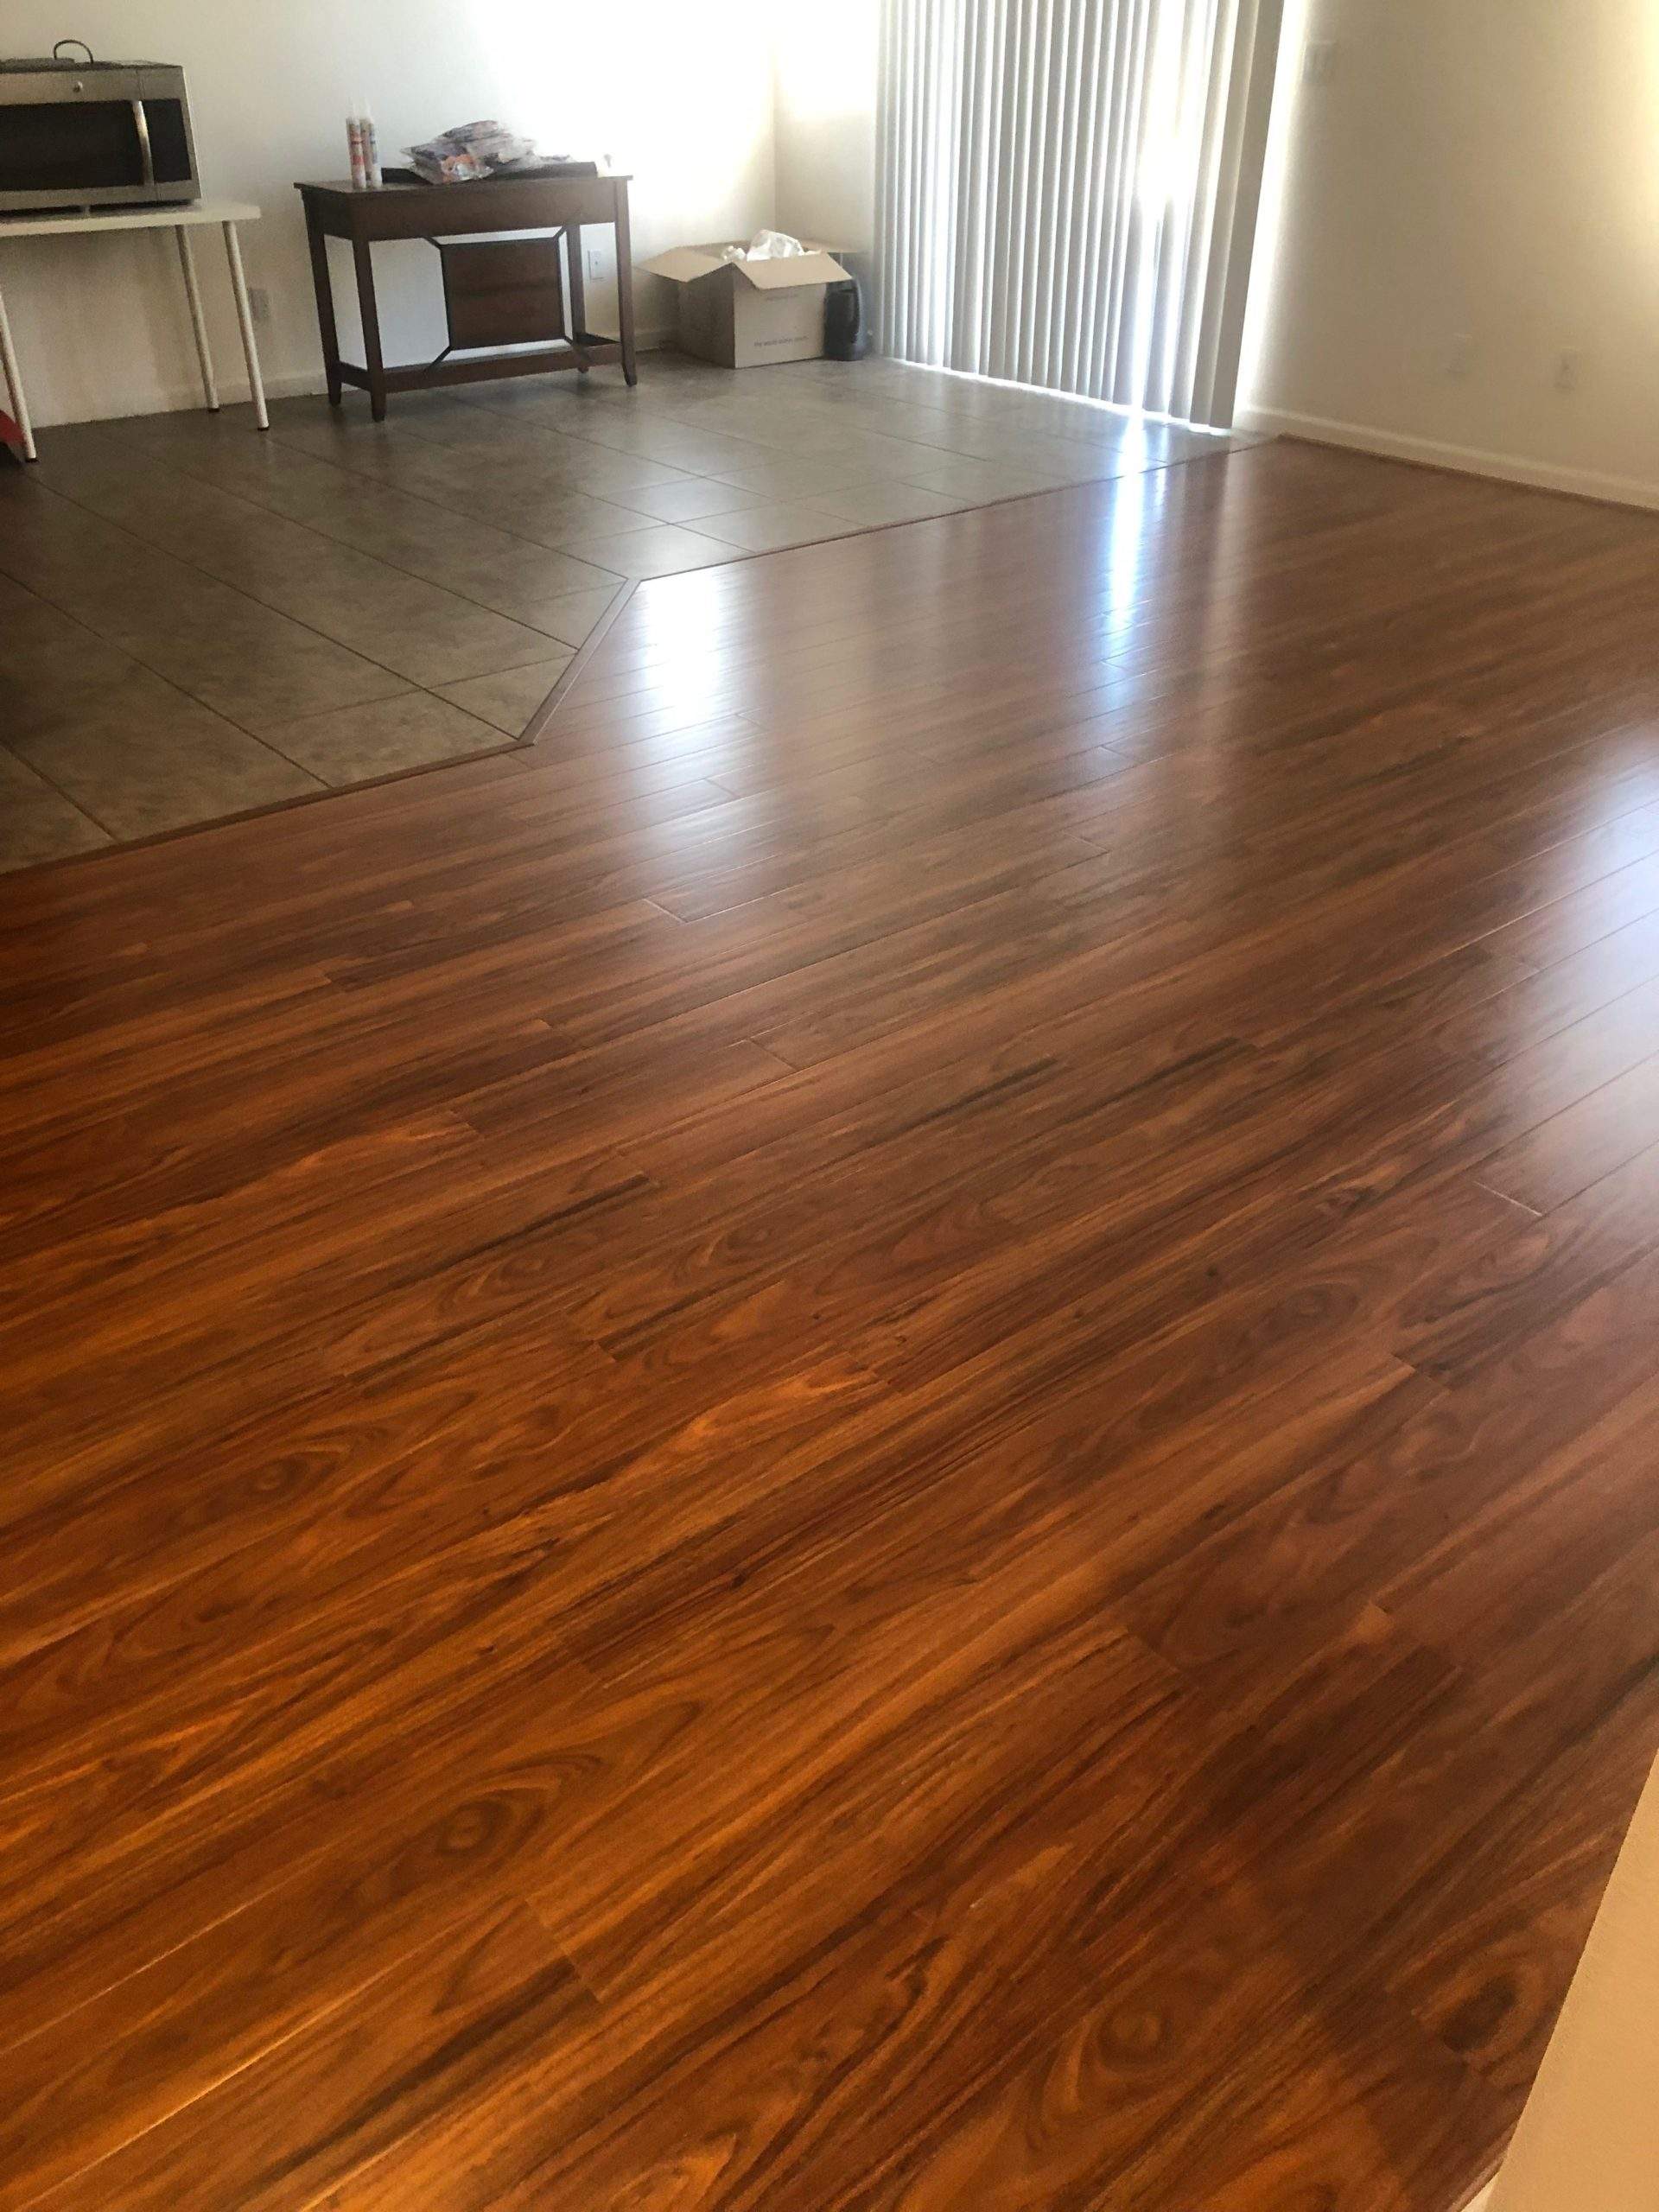 Engineered hardwood floor install